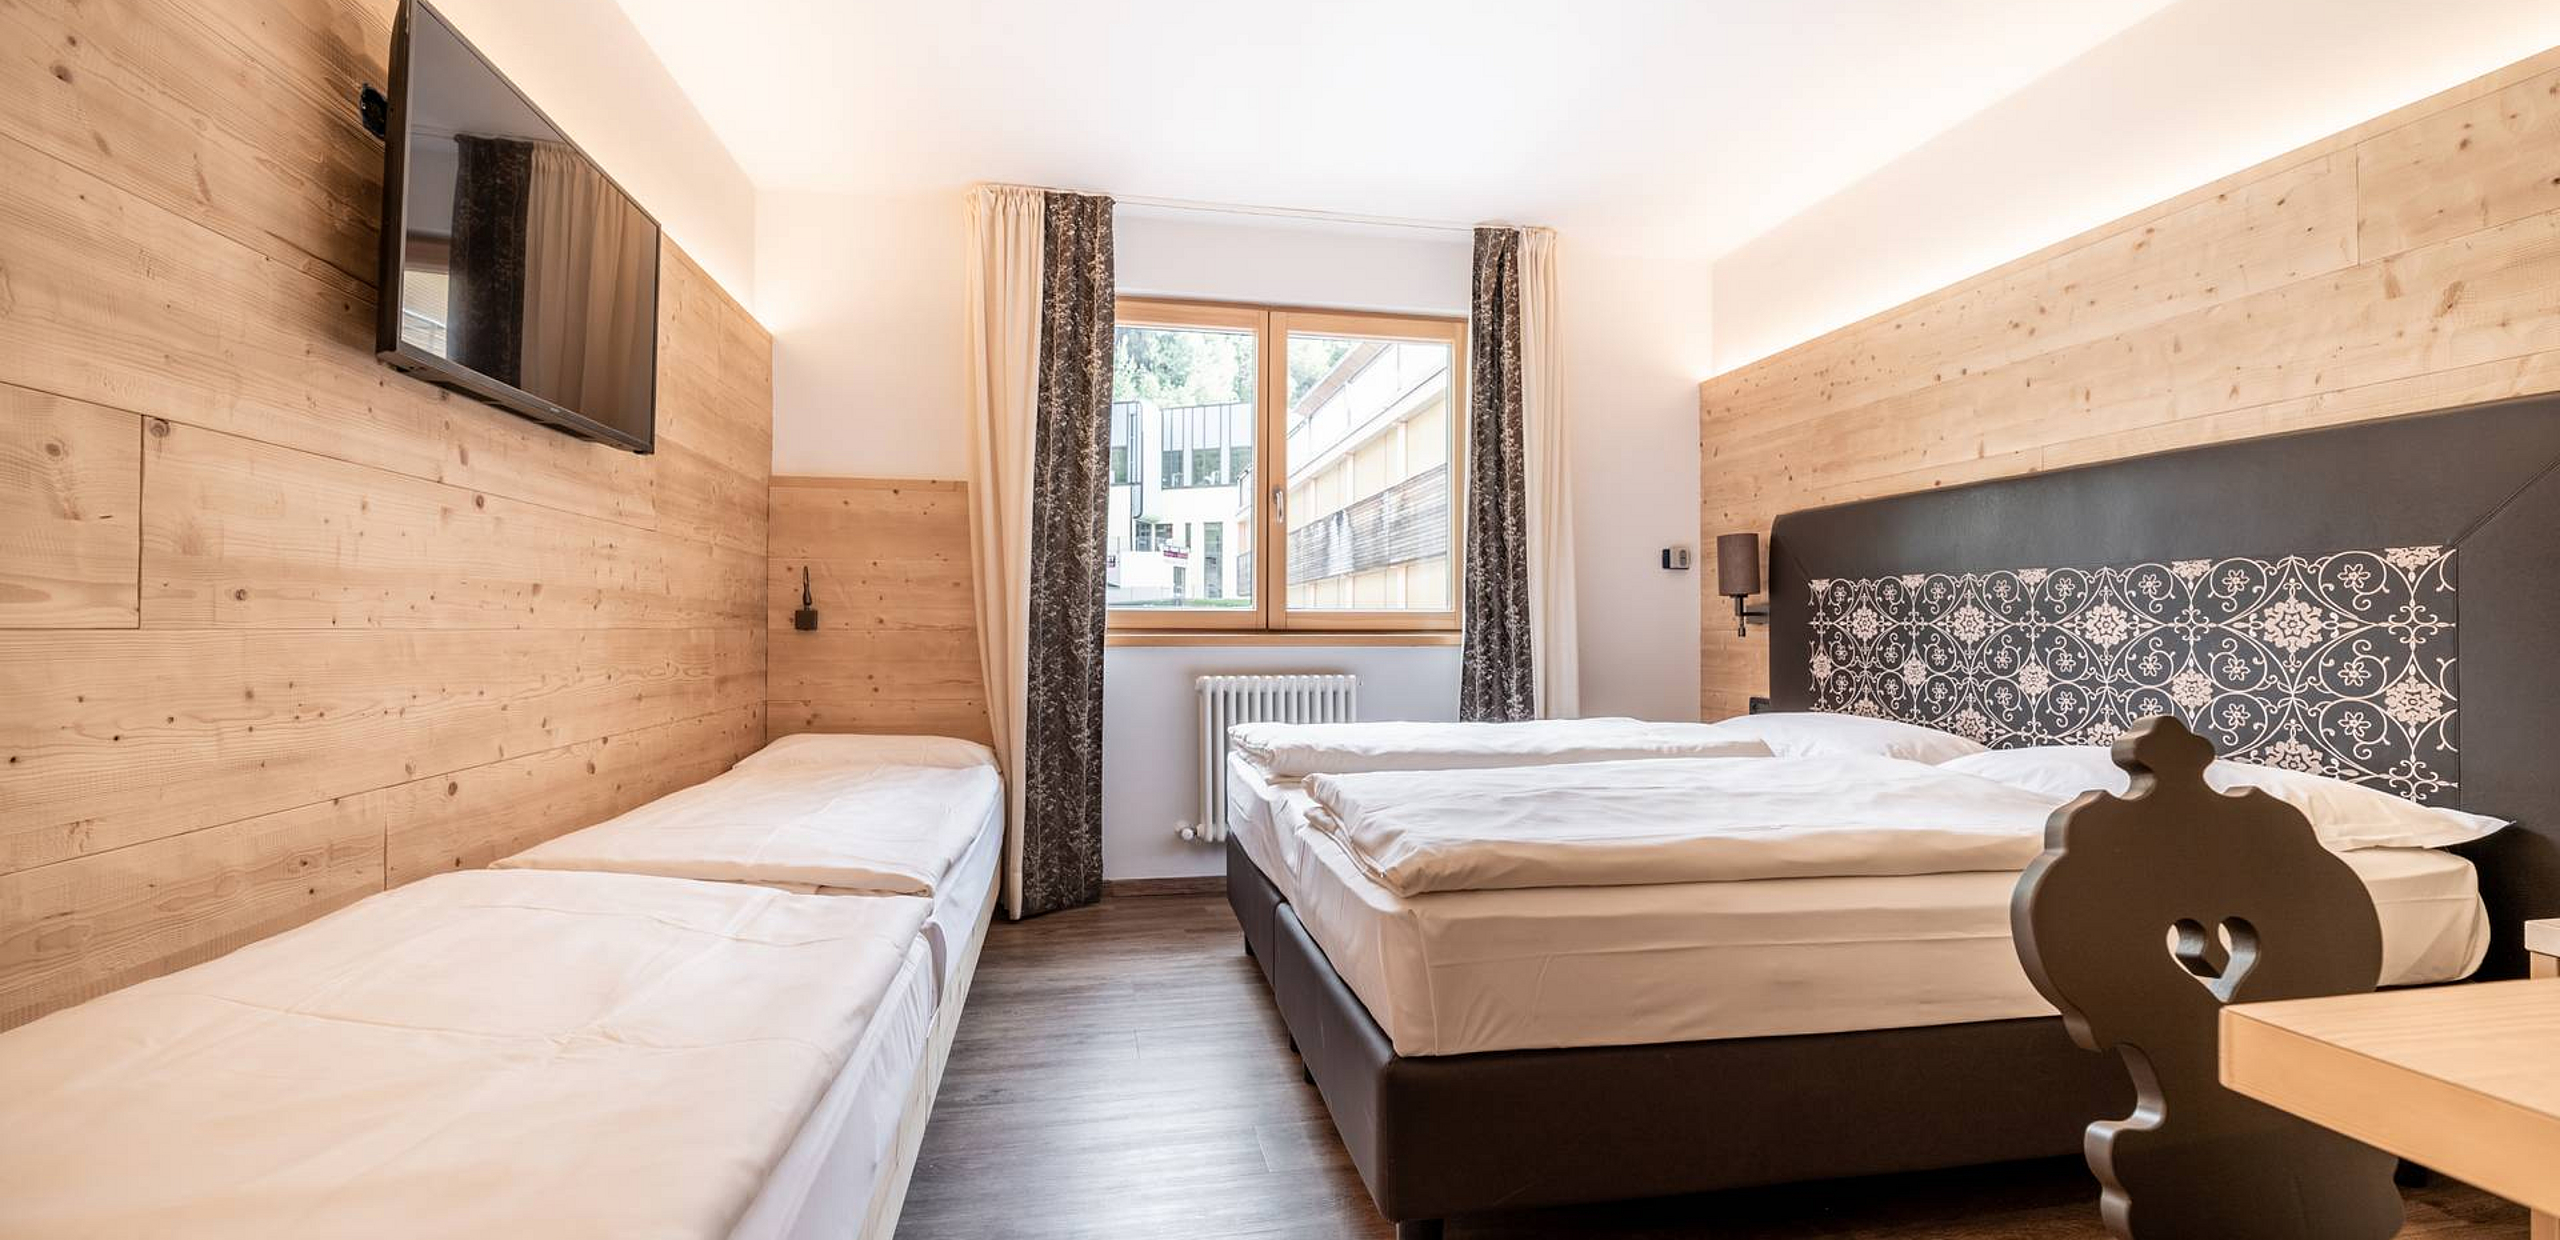 Camere in albergo - Val di sole, Trentino